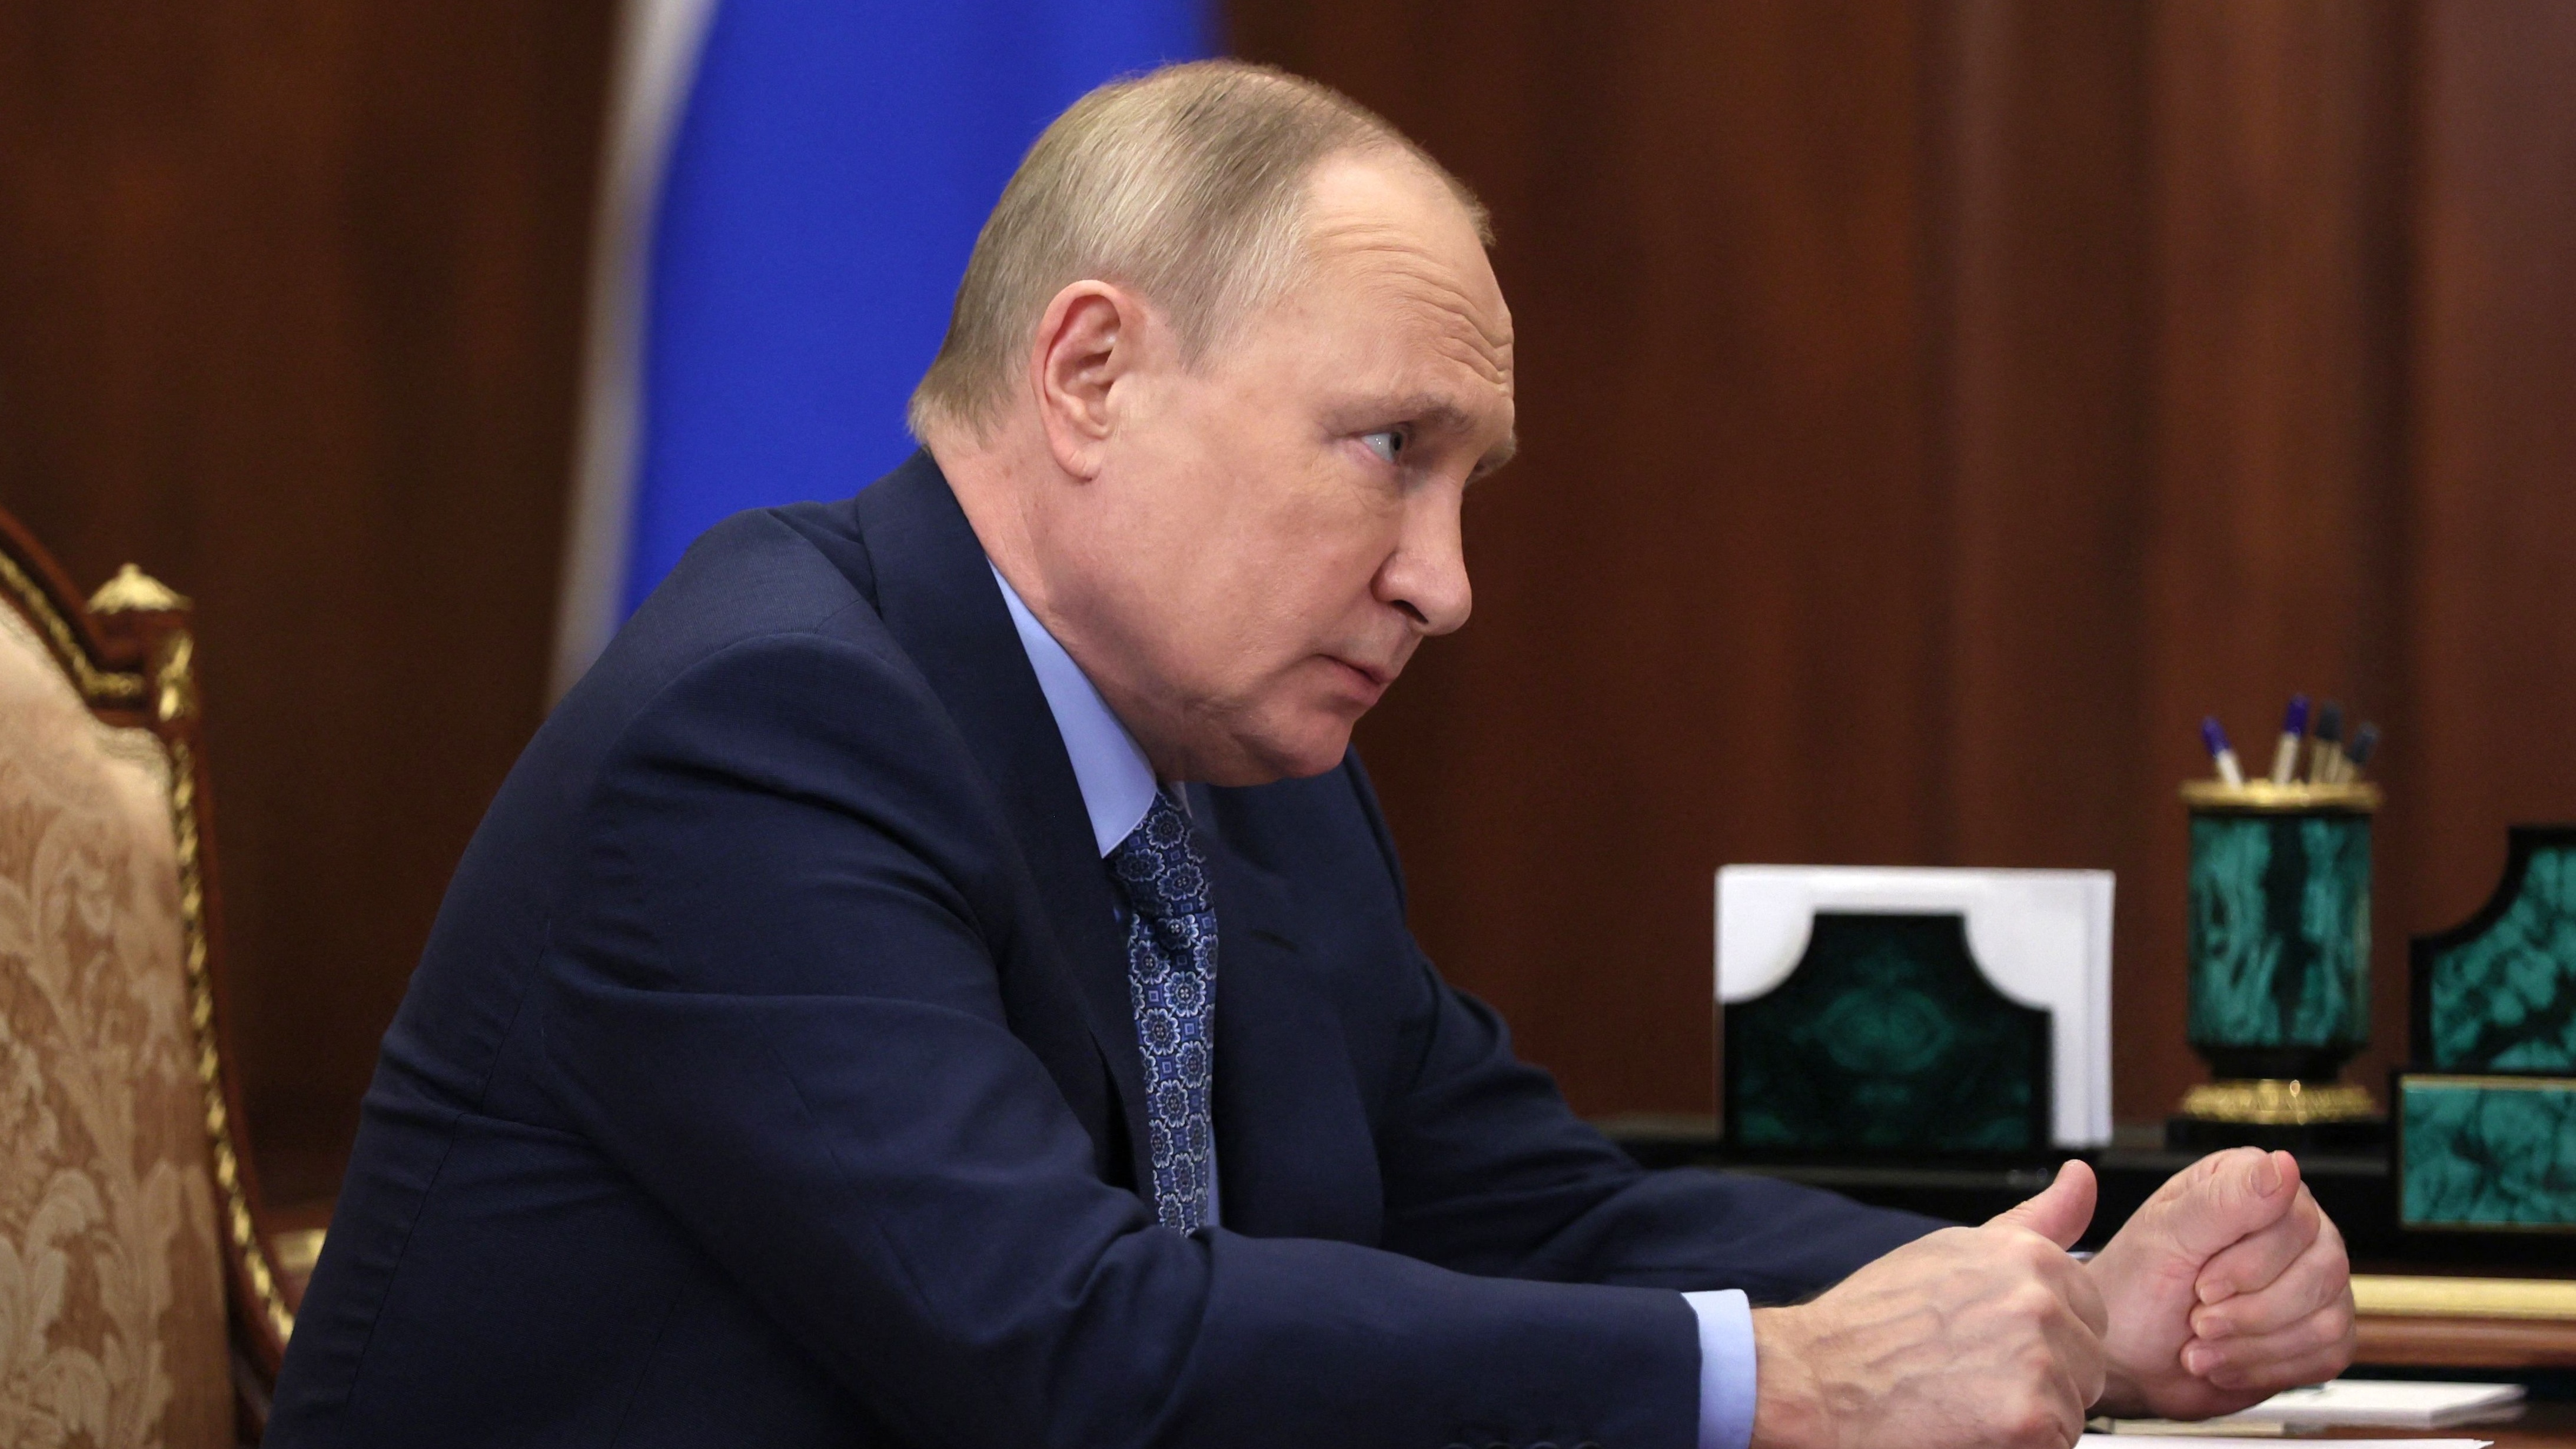 Vladimir Putin pictured during a meeting at the Kremlin